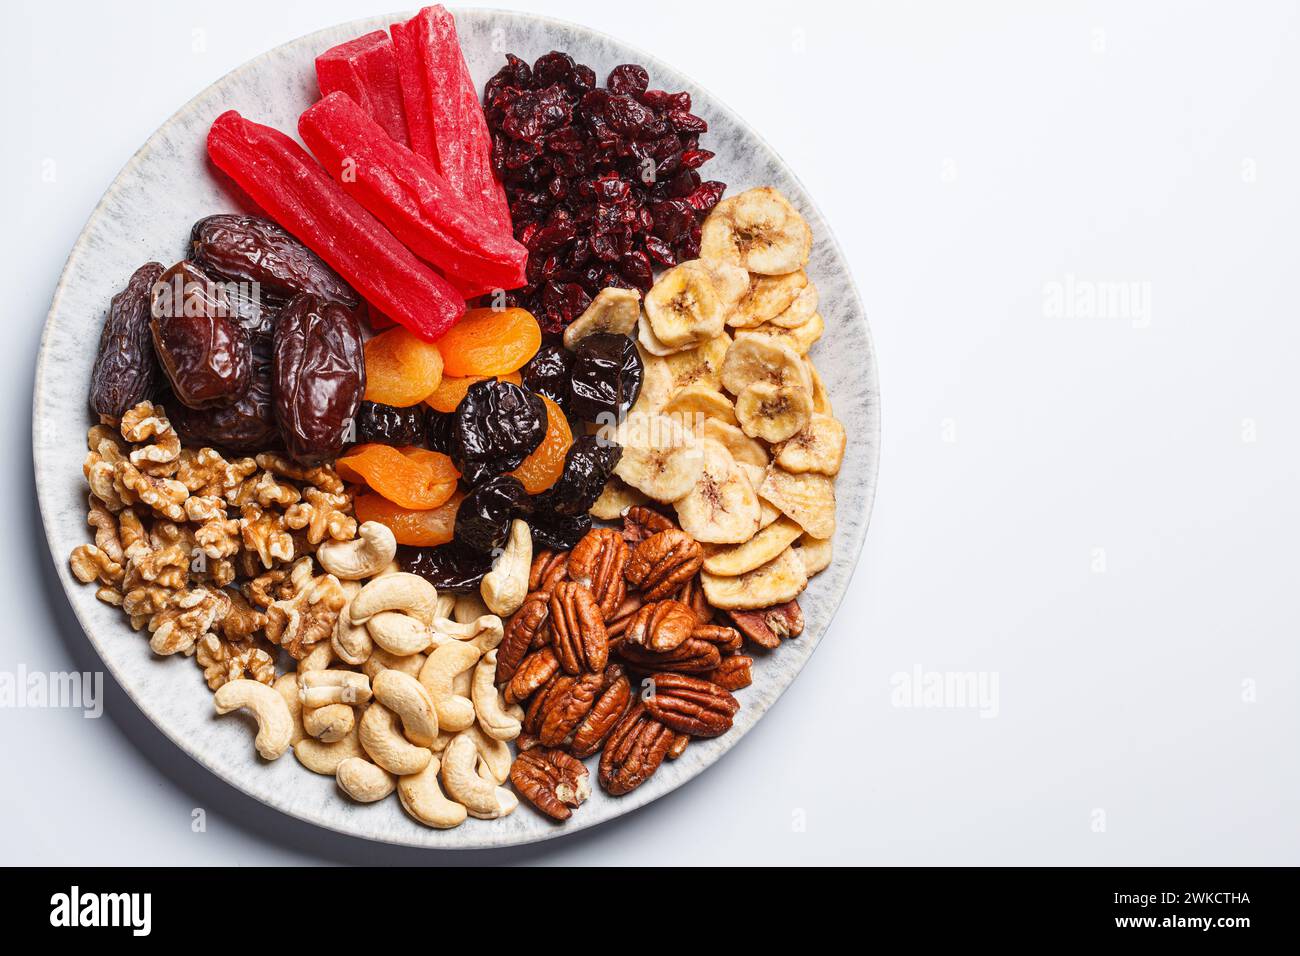 Fruits secs et noix sur une assiette pour célébrer la fête juive tu Bi Shevat, vue de dessus. Banque D'Images